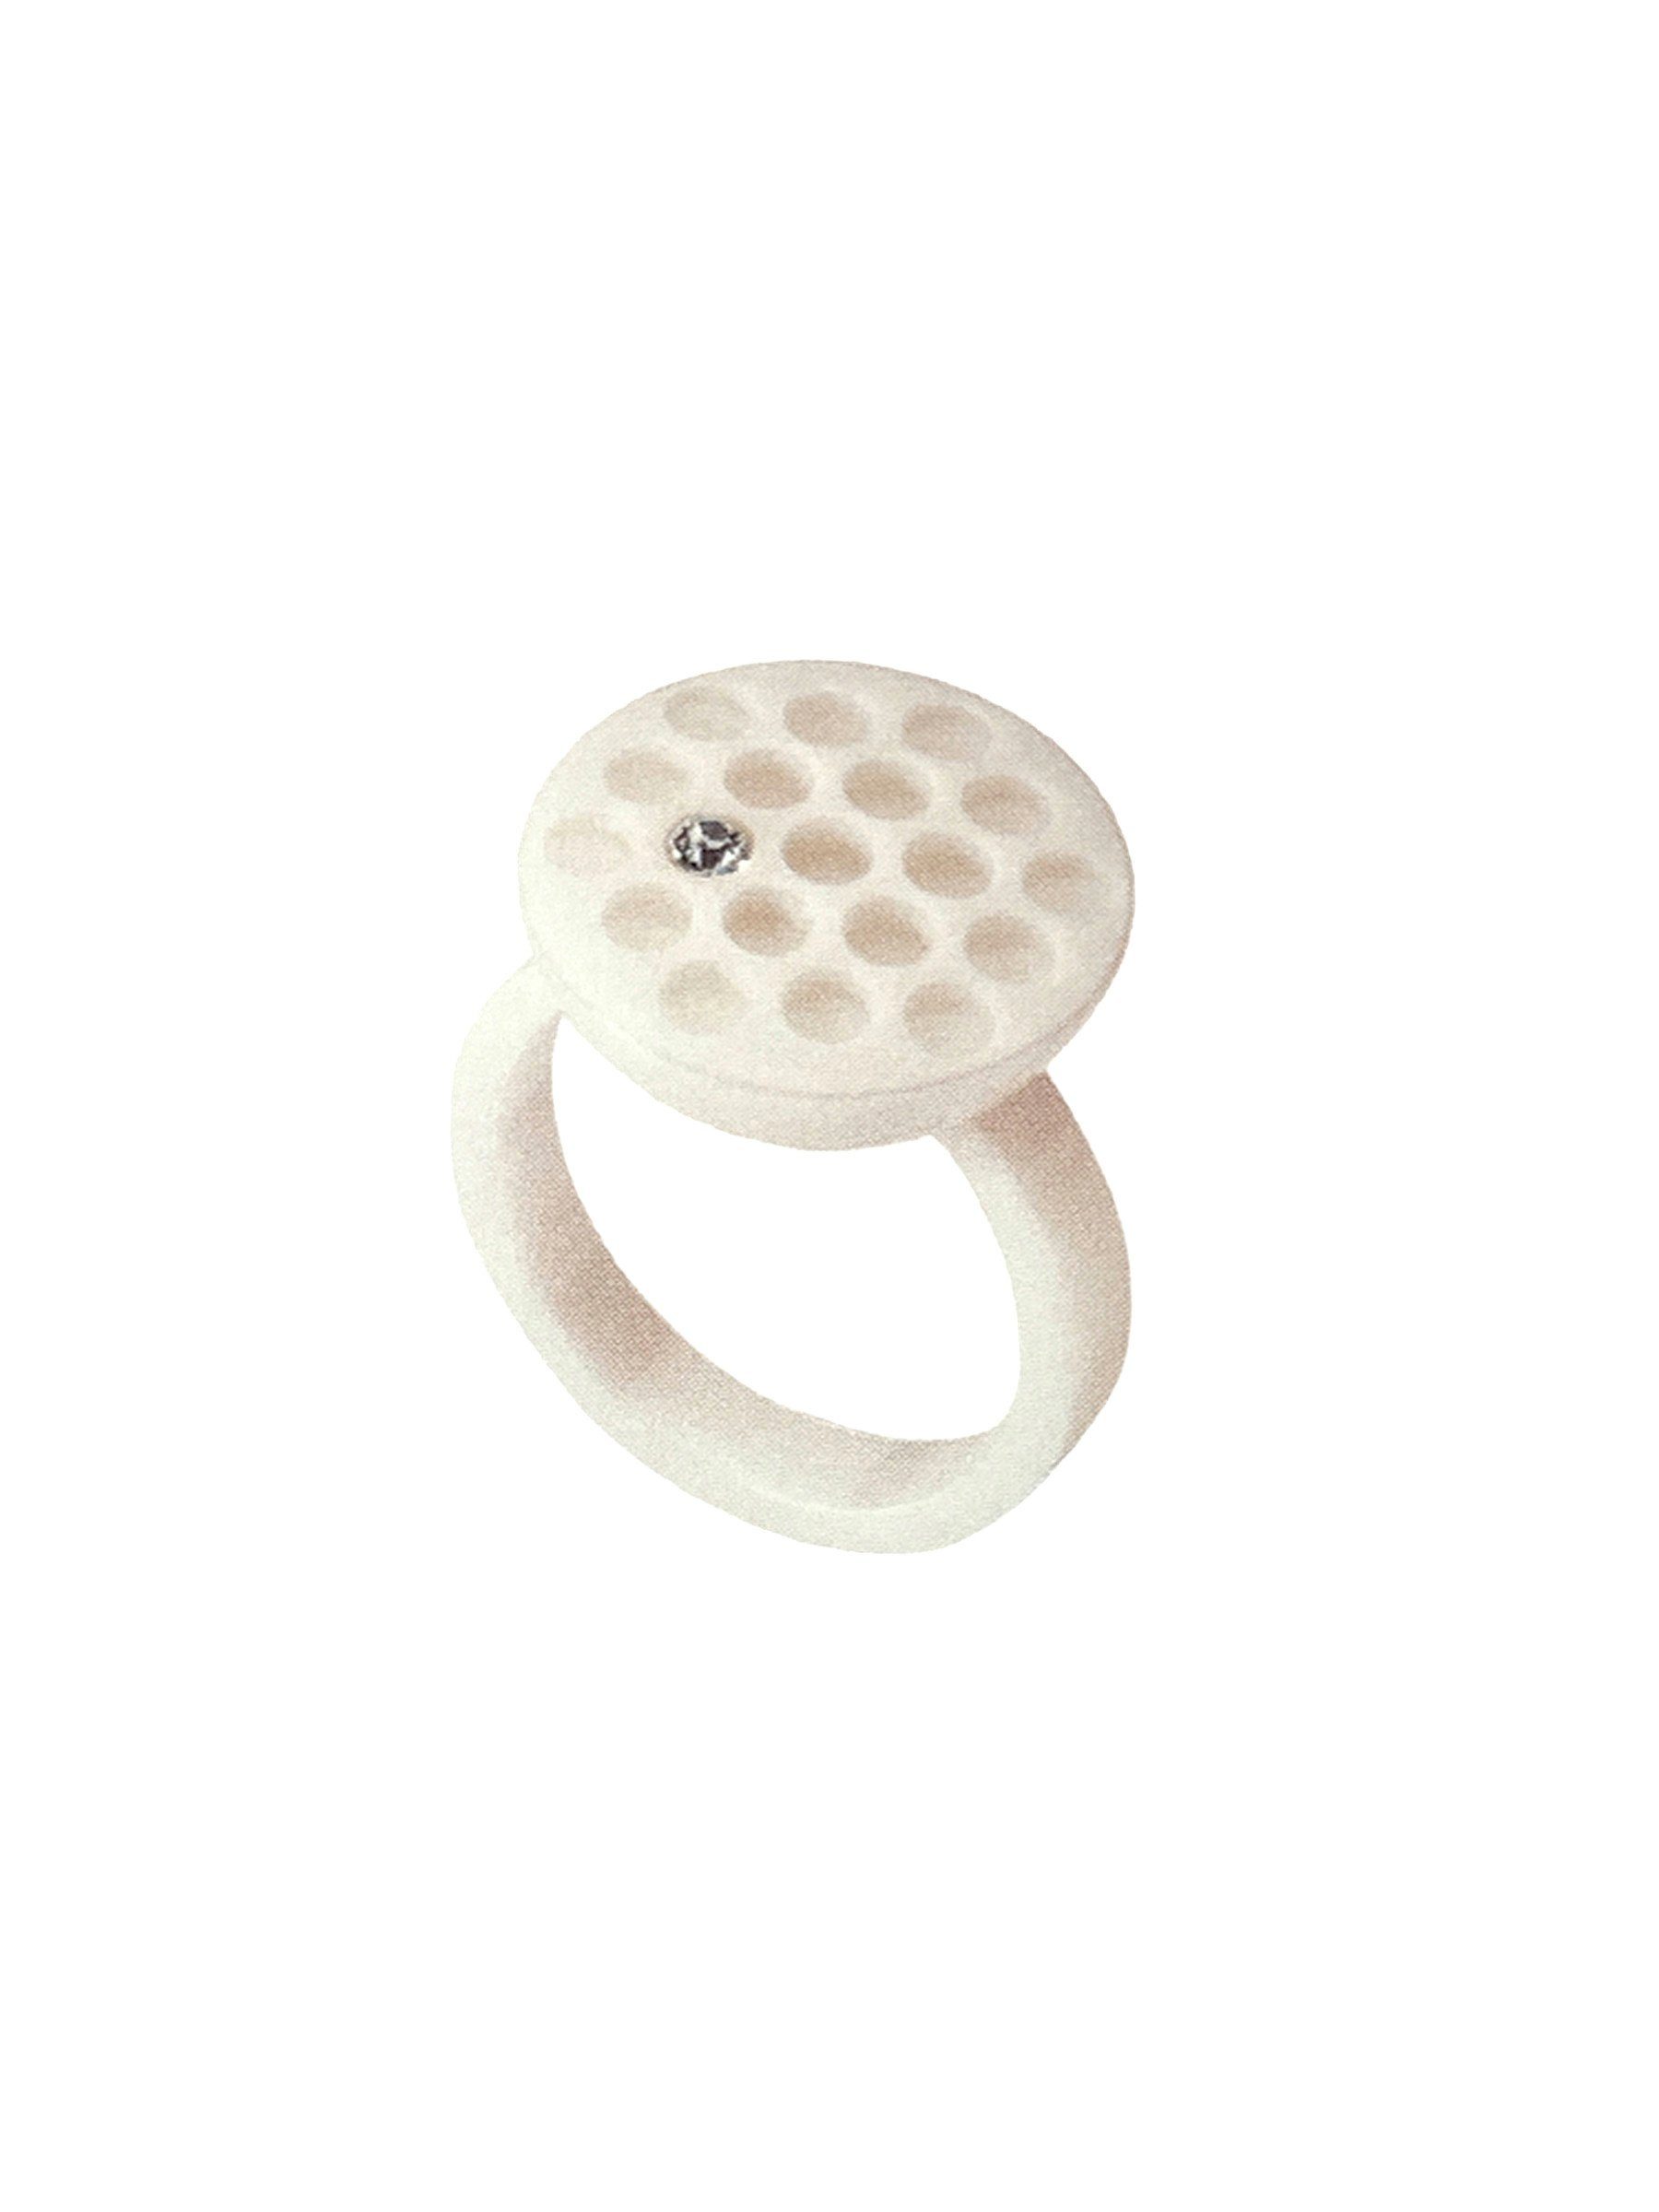 Swatch Bijoux Fingerring JRW016-7, Ring aus Edelstahl und weißer Keramik